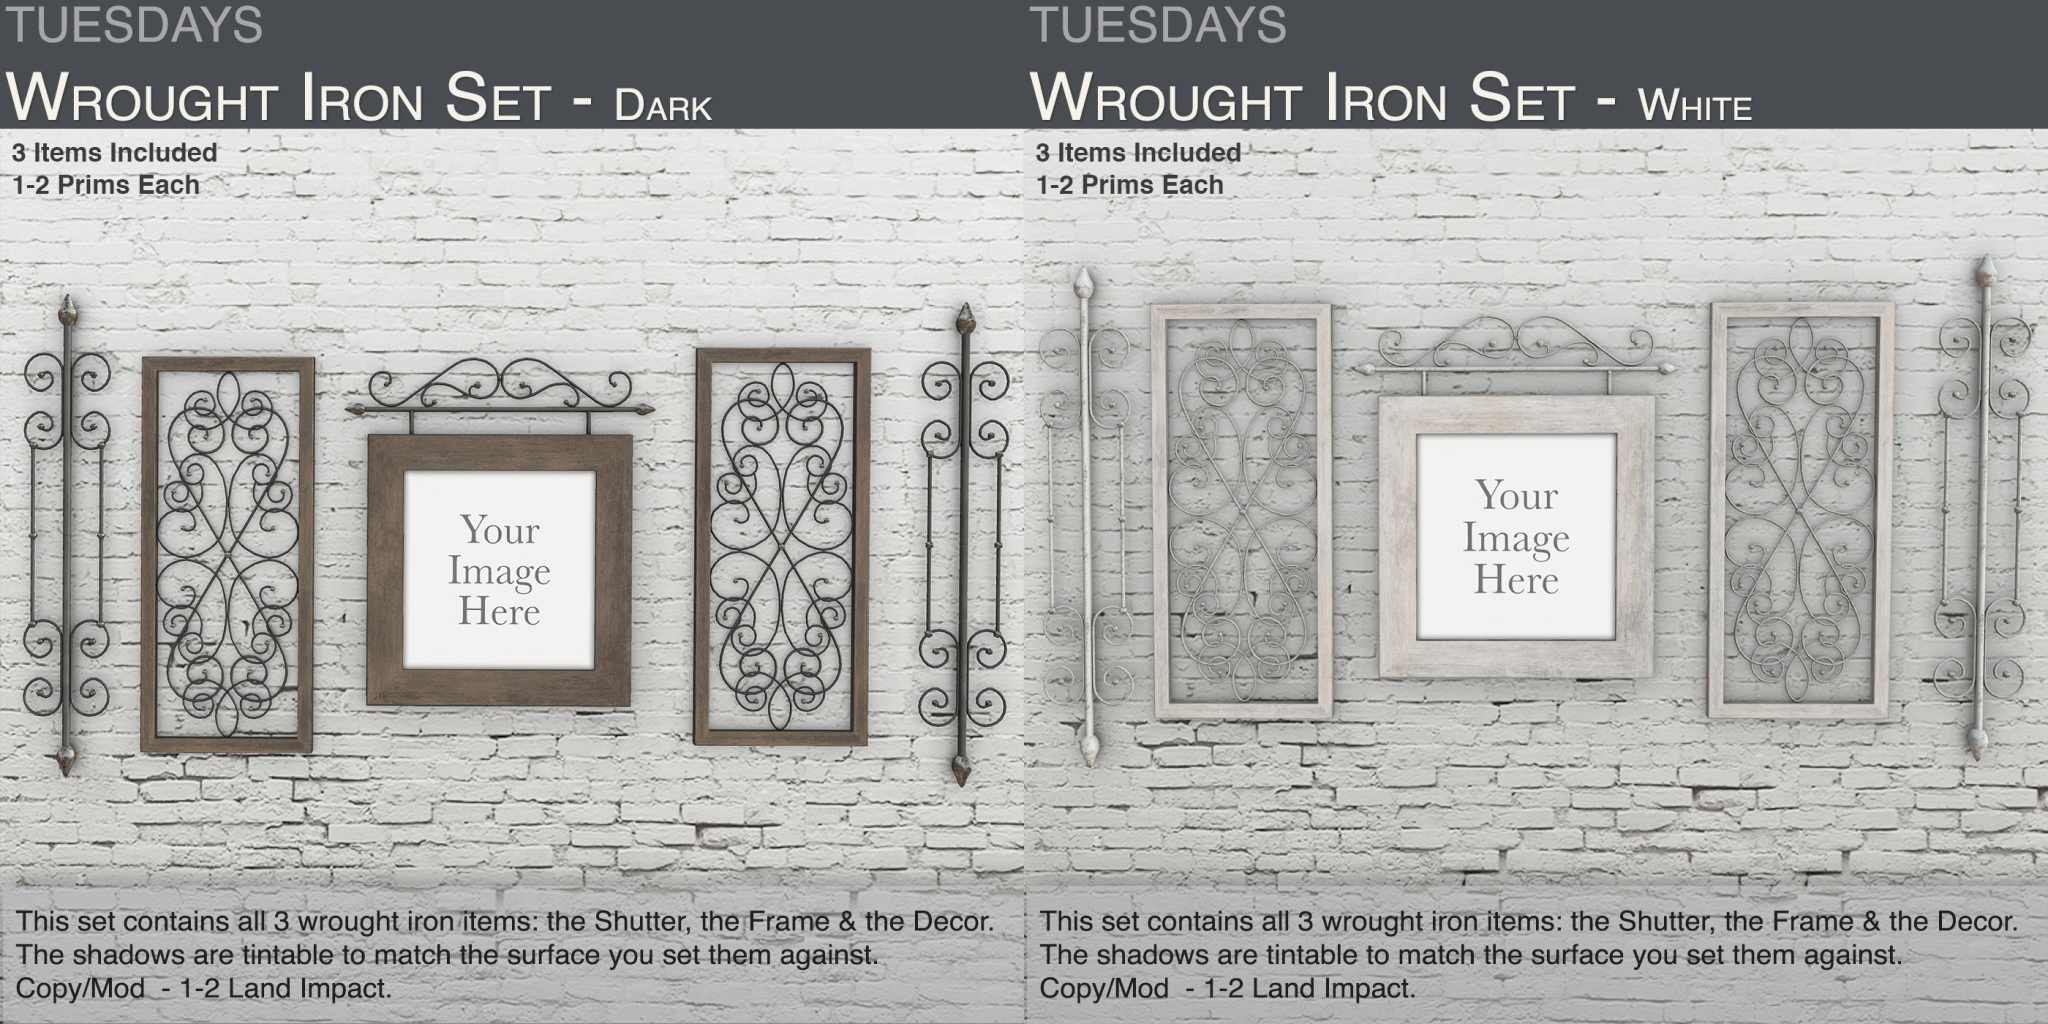 Tuesdays – Wrought Iron Set